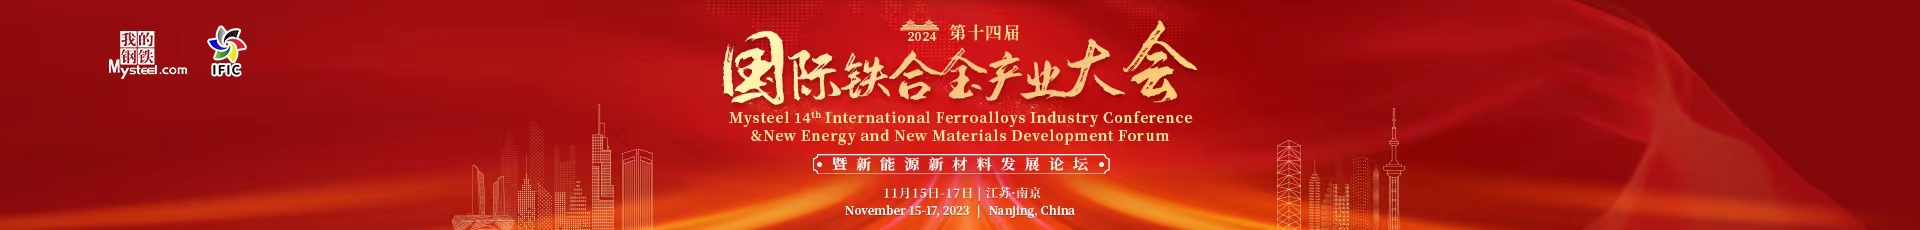 2023 Mysteel International Ferroalloys Industry Conference